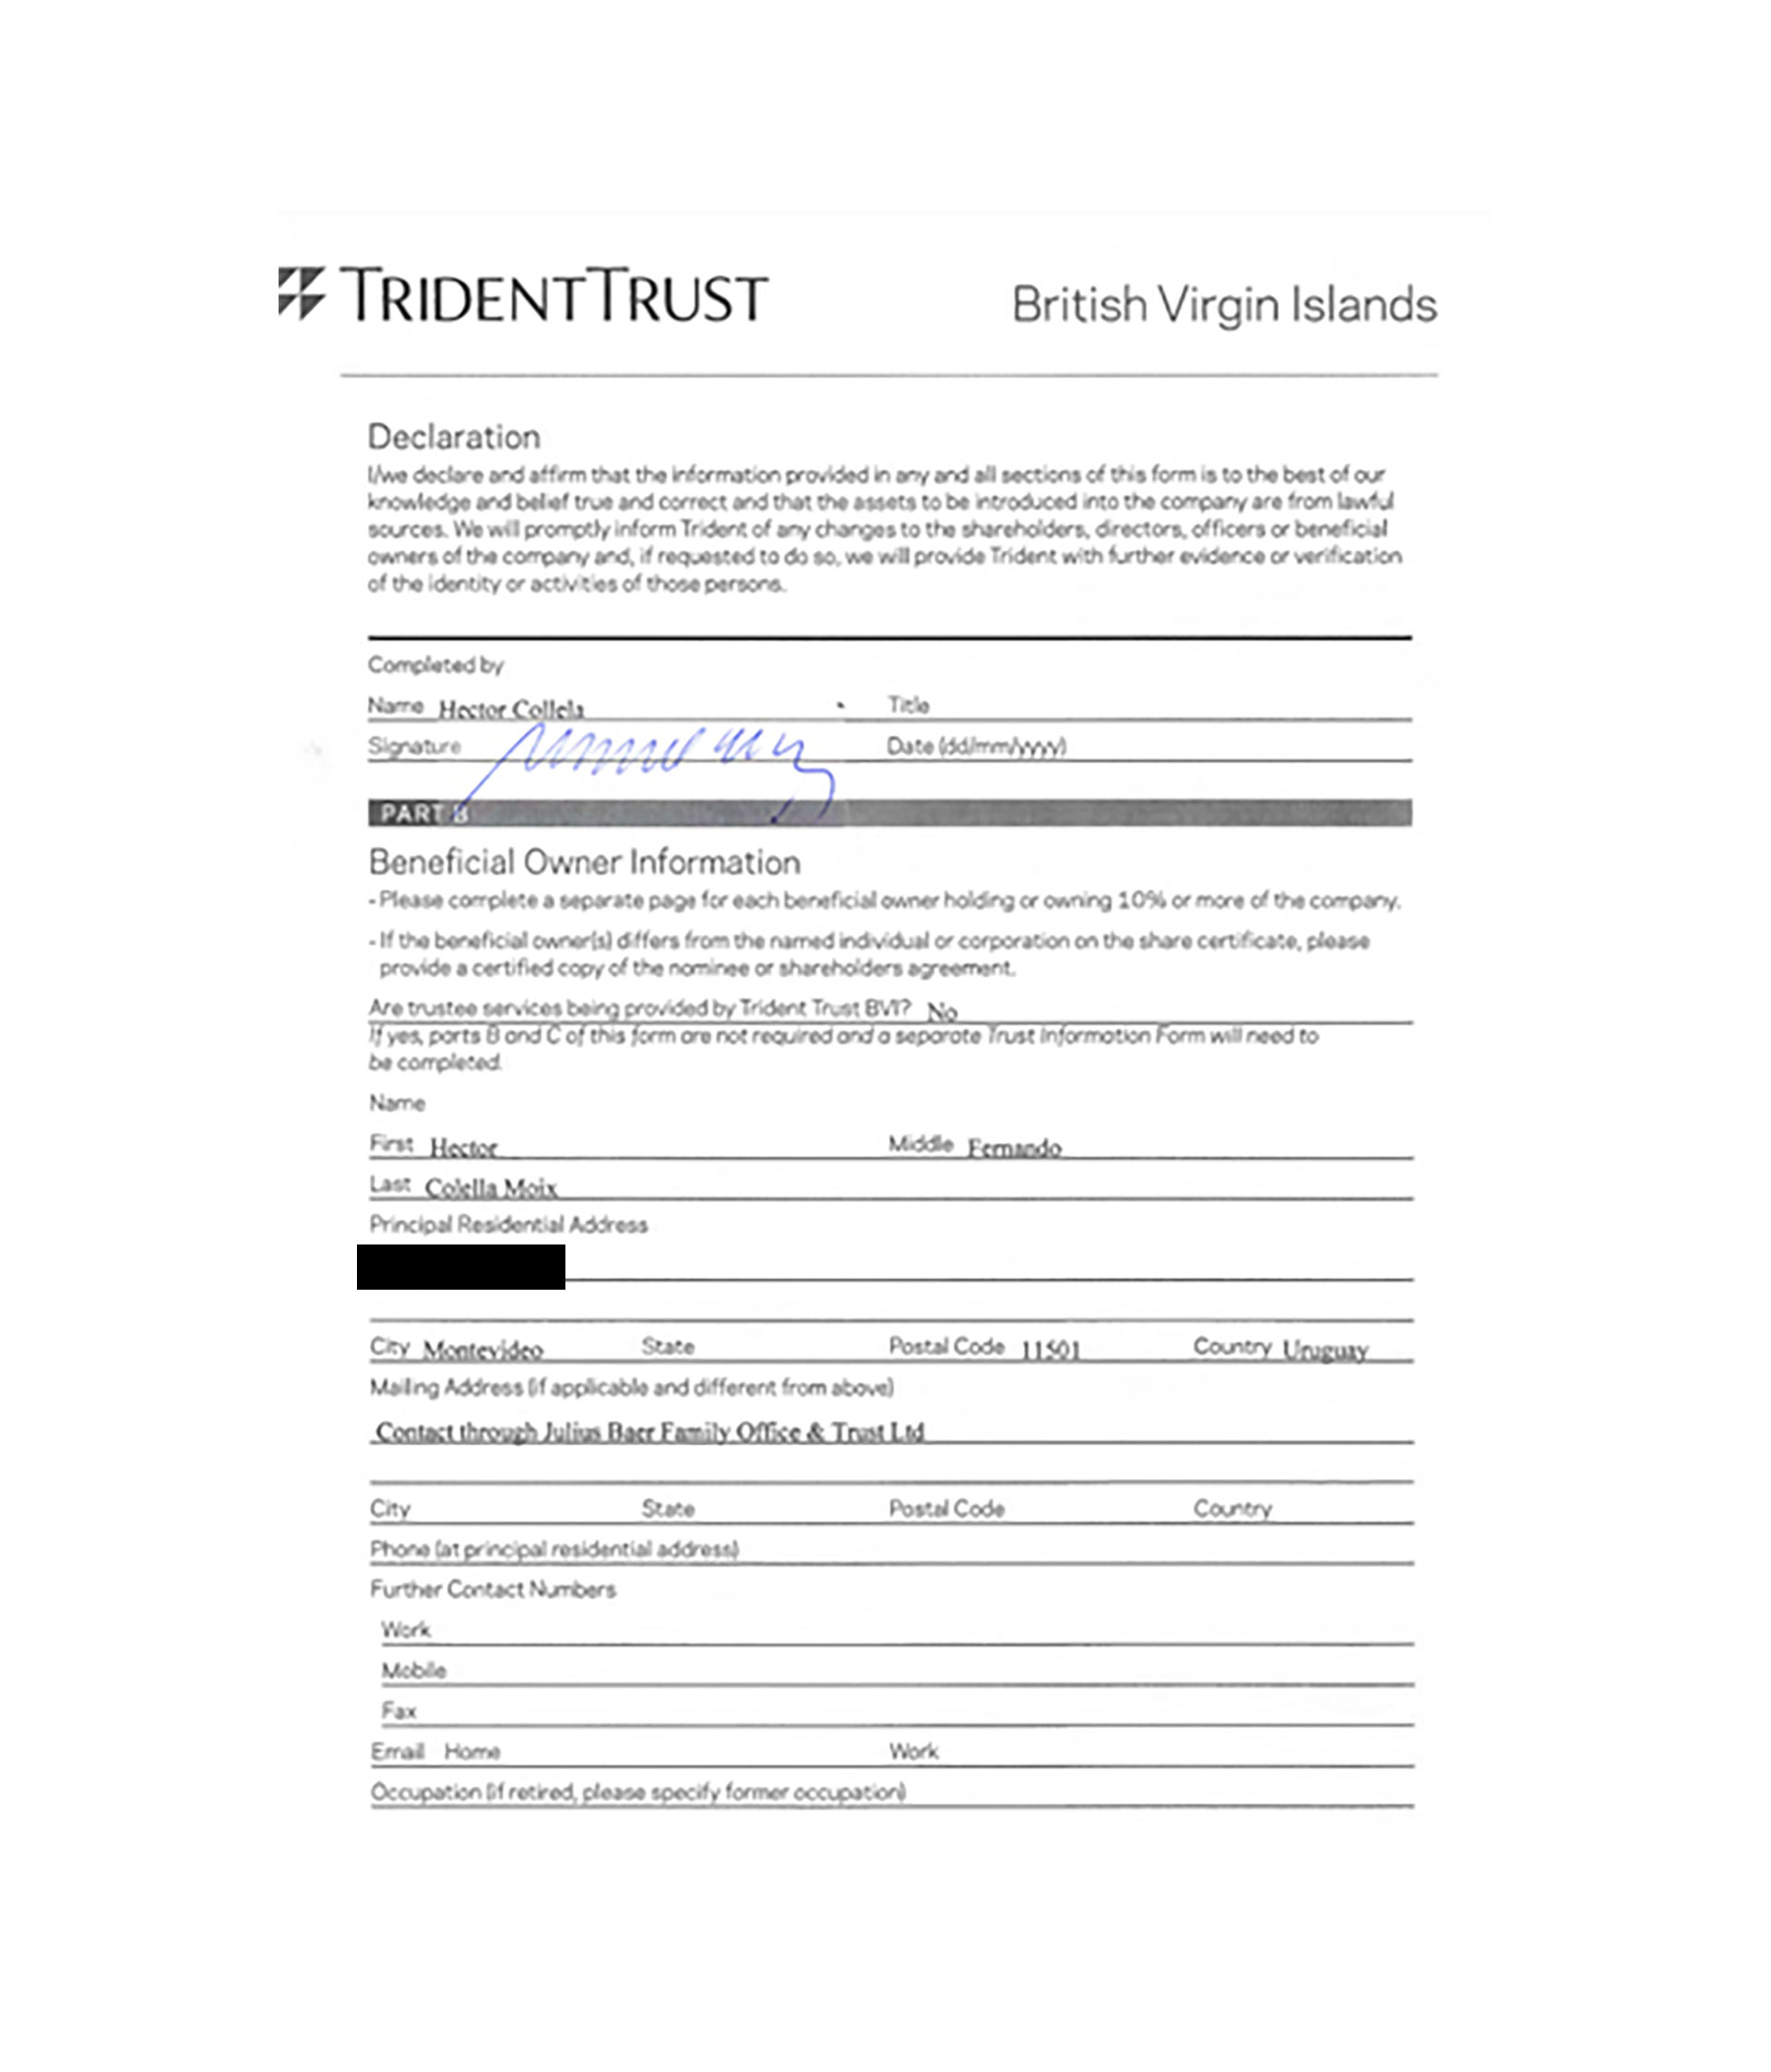 Formulario interno de Trident Trust, proveedor de servicios offshore, completado y firmado por el propio Colella